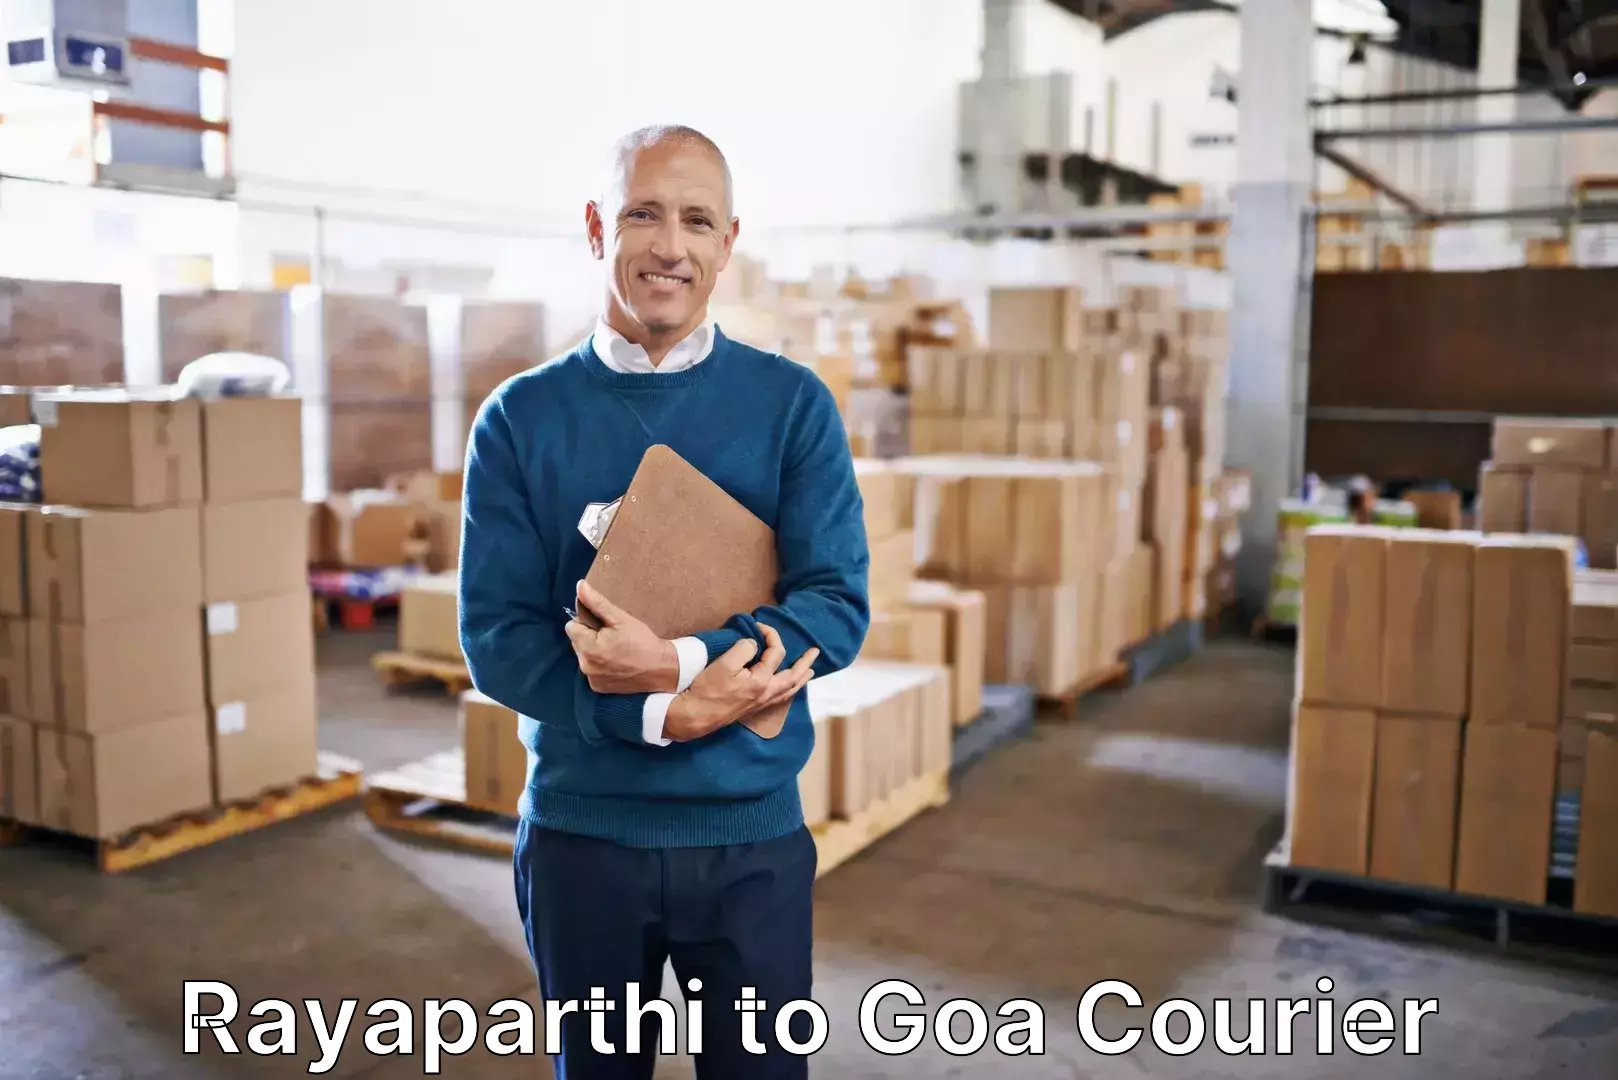 Luggage shipment tracking Rayaparthi to Goa University